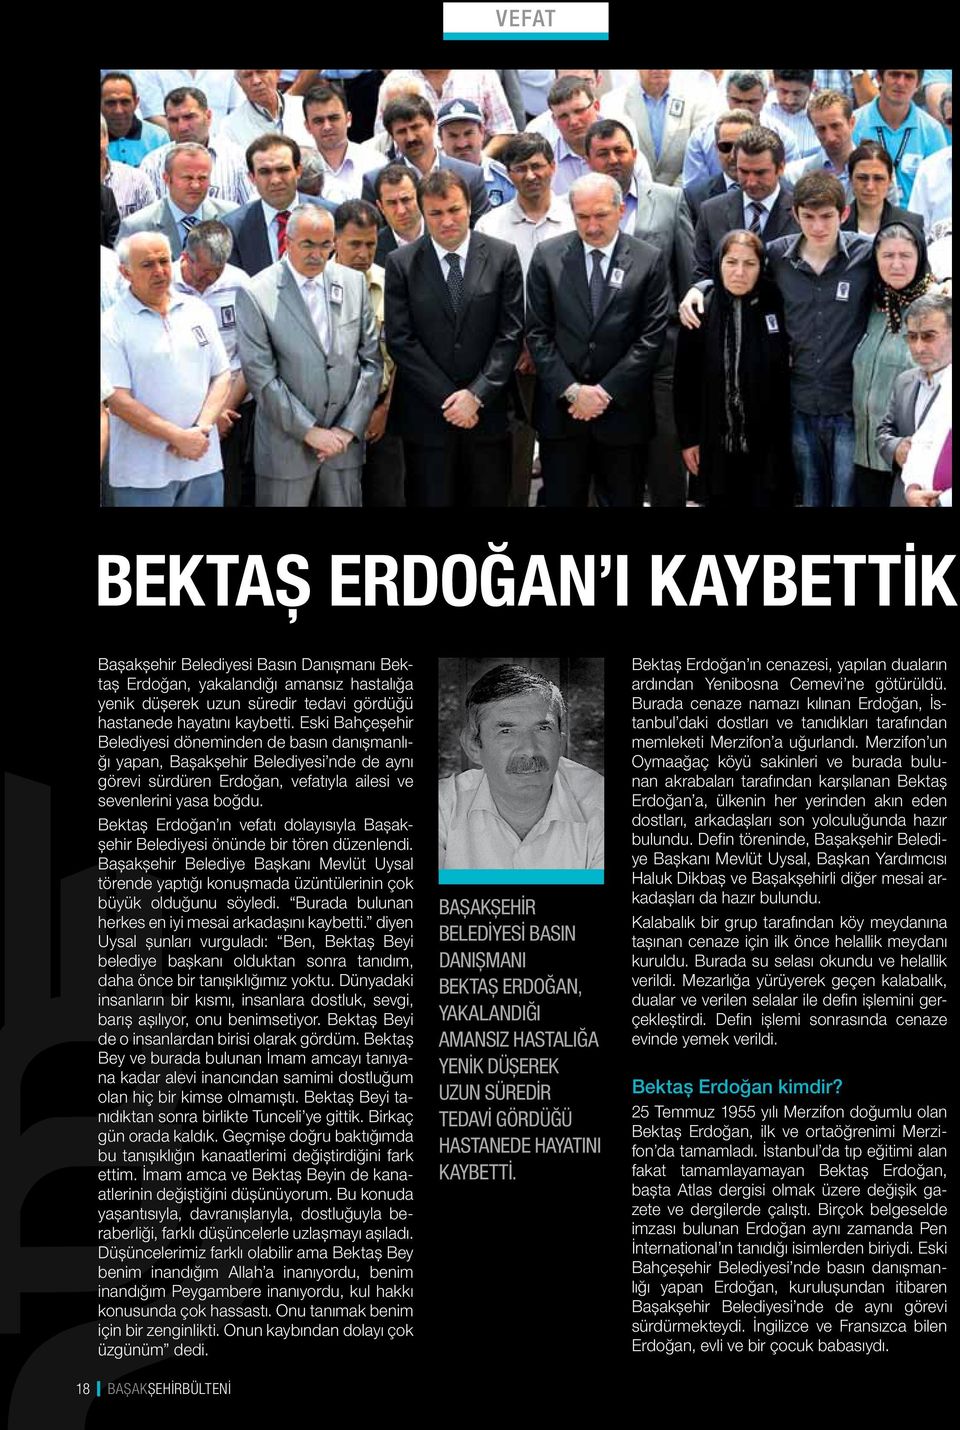 Bektaş Erdoğan ın vefatı dolayısıyla Başakşehir Belediyesi önünde bir tören düzenlendi. Başakşehir Belediye Başkanı Mevlüt Uysal törende yaptığı konuşmada üzüntülerinin çok büyük olduğunu söyledi.